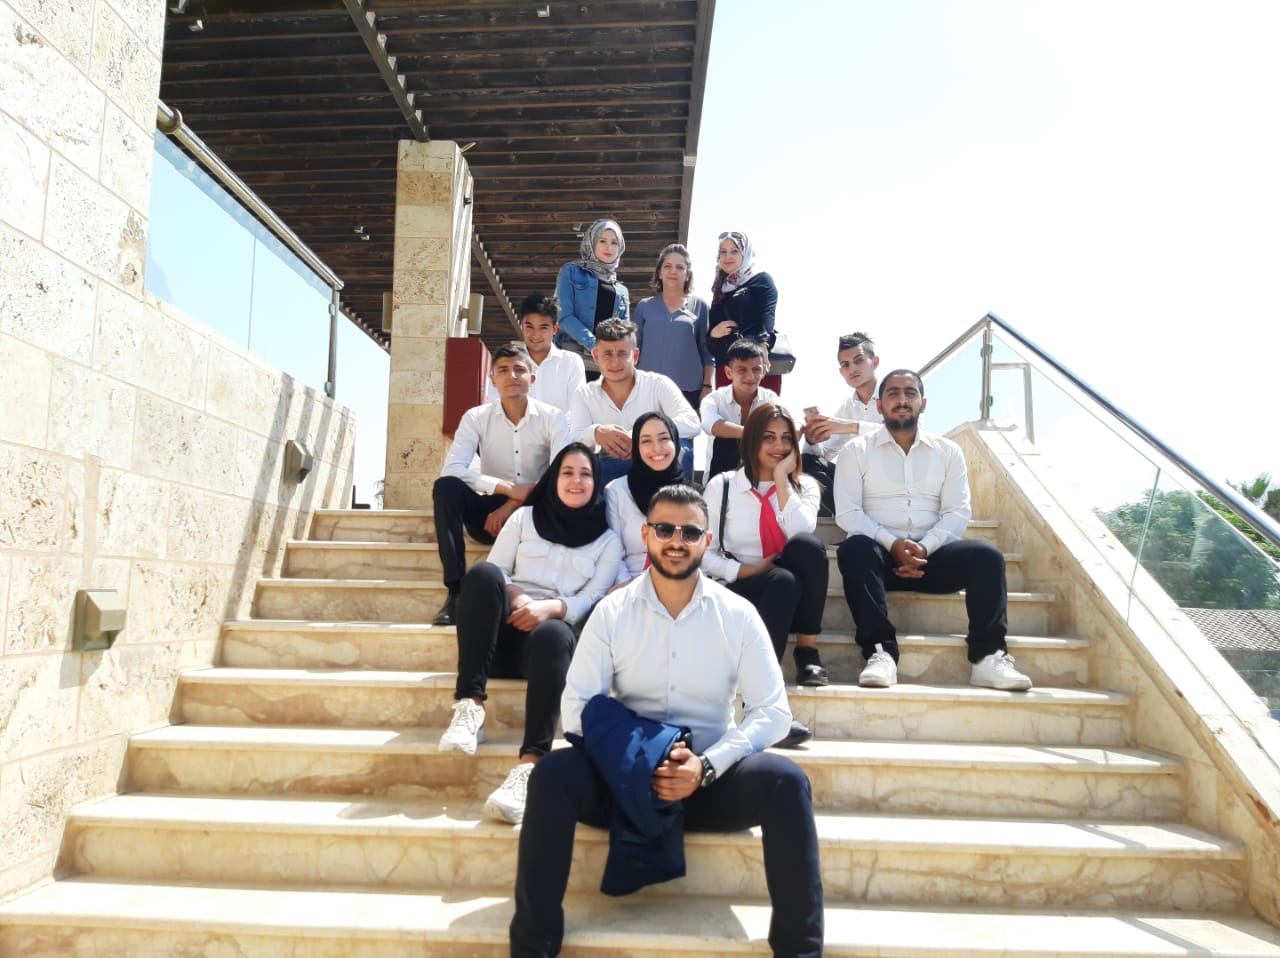 منتجع رمادا باي ويندهام البحر الميت يستضيف مجموعة من طلاب جامعة اليرموك في جولة تعليمية